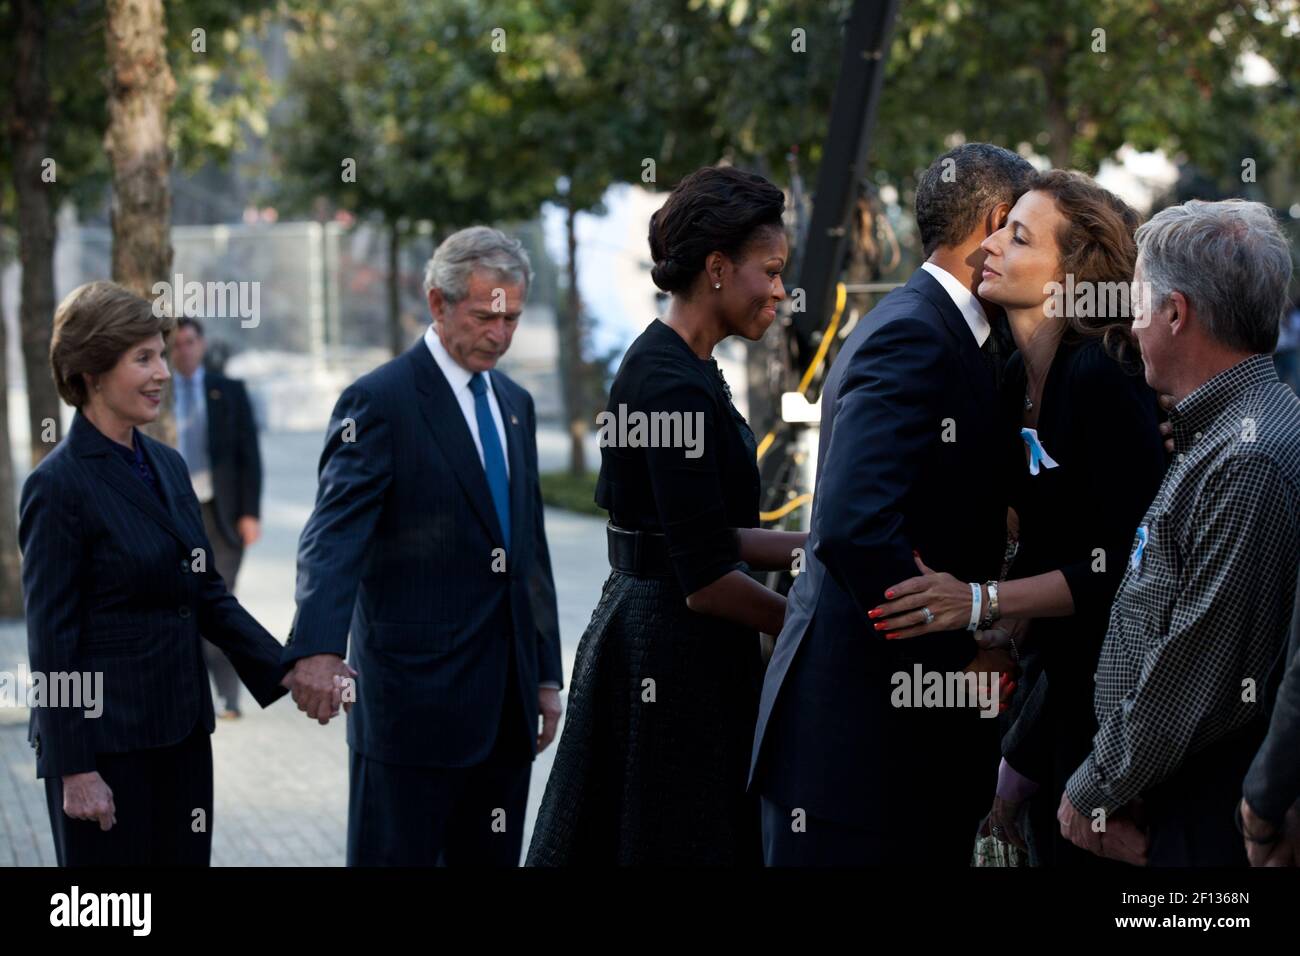 El Presidente Barack Obama y la primera Dama Michelle Obama, junto con el ex Presidente George W. Bush y la ex primera Dama Laura Bush, saludan a familiares y dignatarios locales en el Monumento Nacional del 11 de septiembre en Nueva York, Nueva York, en el décimo aniversario de los ataques del 9/11 contra el Domingo de los Estados Unidos 11 2011 de septiembre. Foto de stock